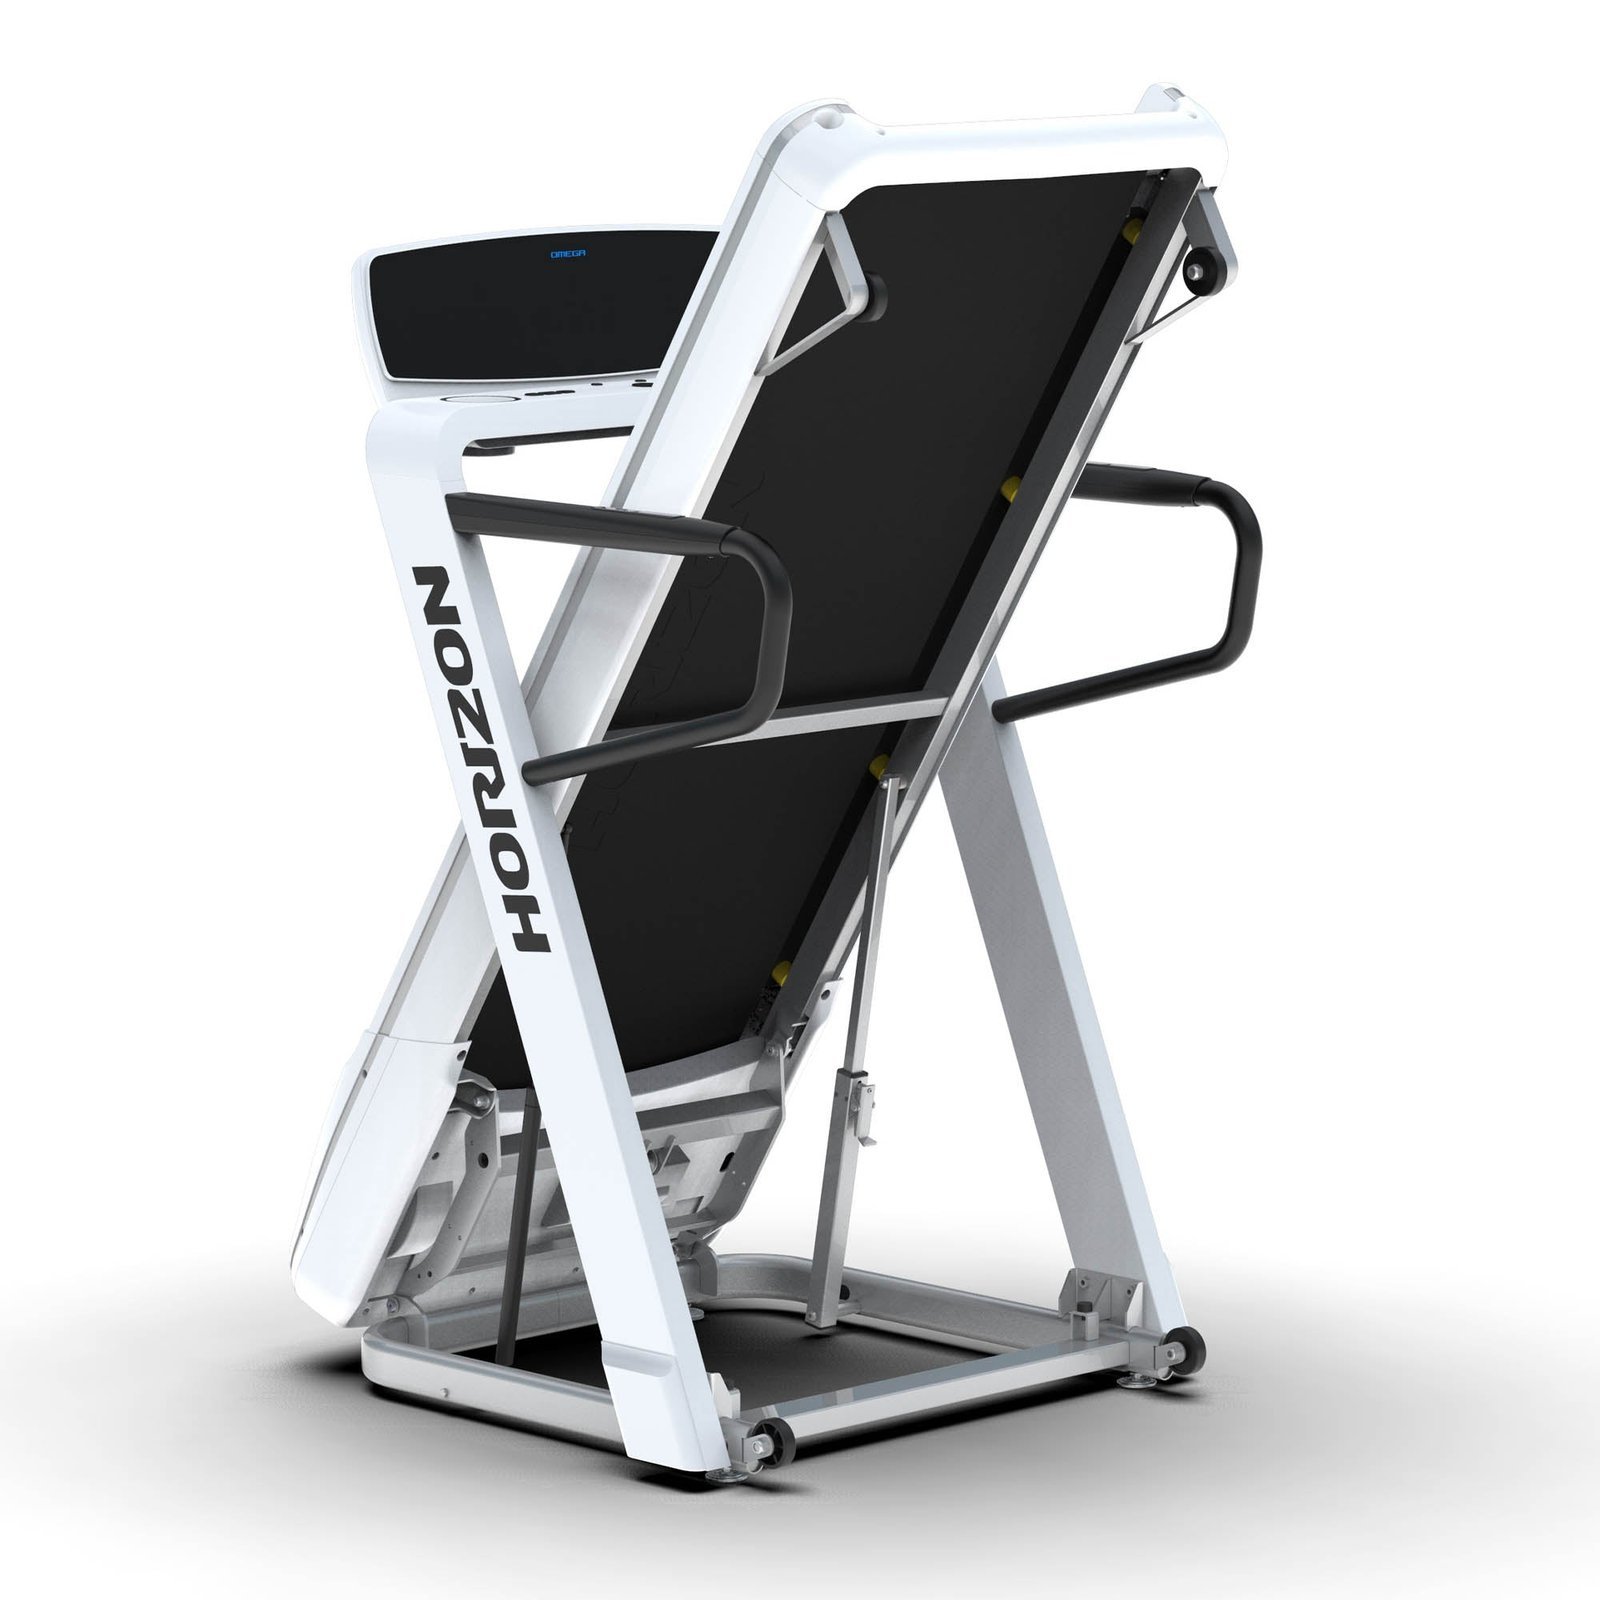 Horizon Fitness Omega Z Treadmill